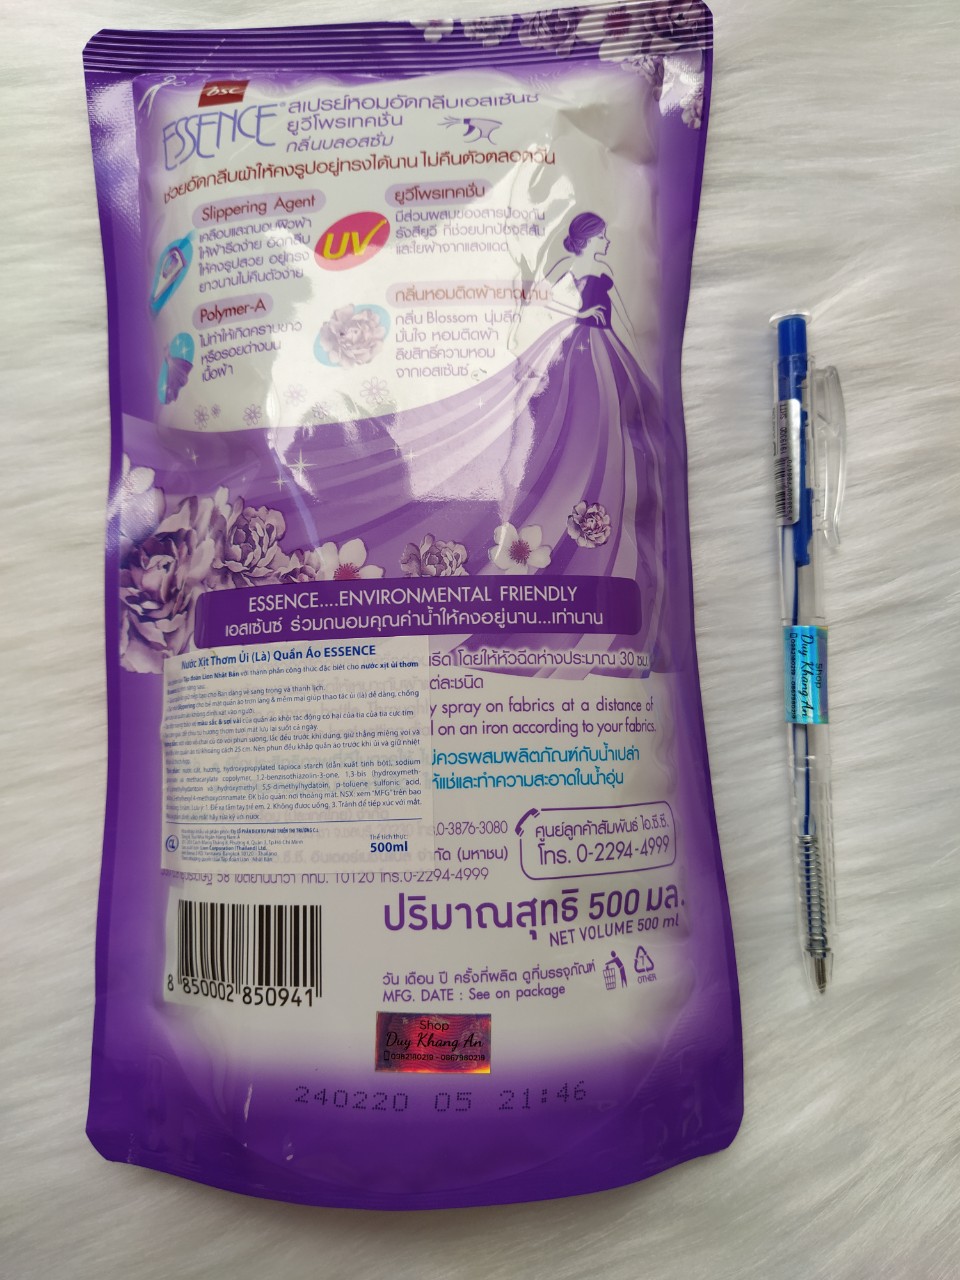 24 túi 1 thùng xịt ủi Essence 500ml tím nhập khẩu Thái Lan - Shop GS An